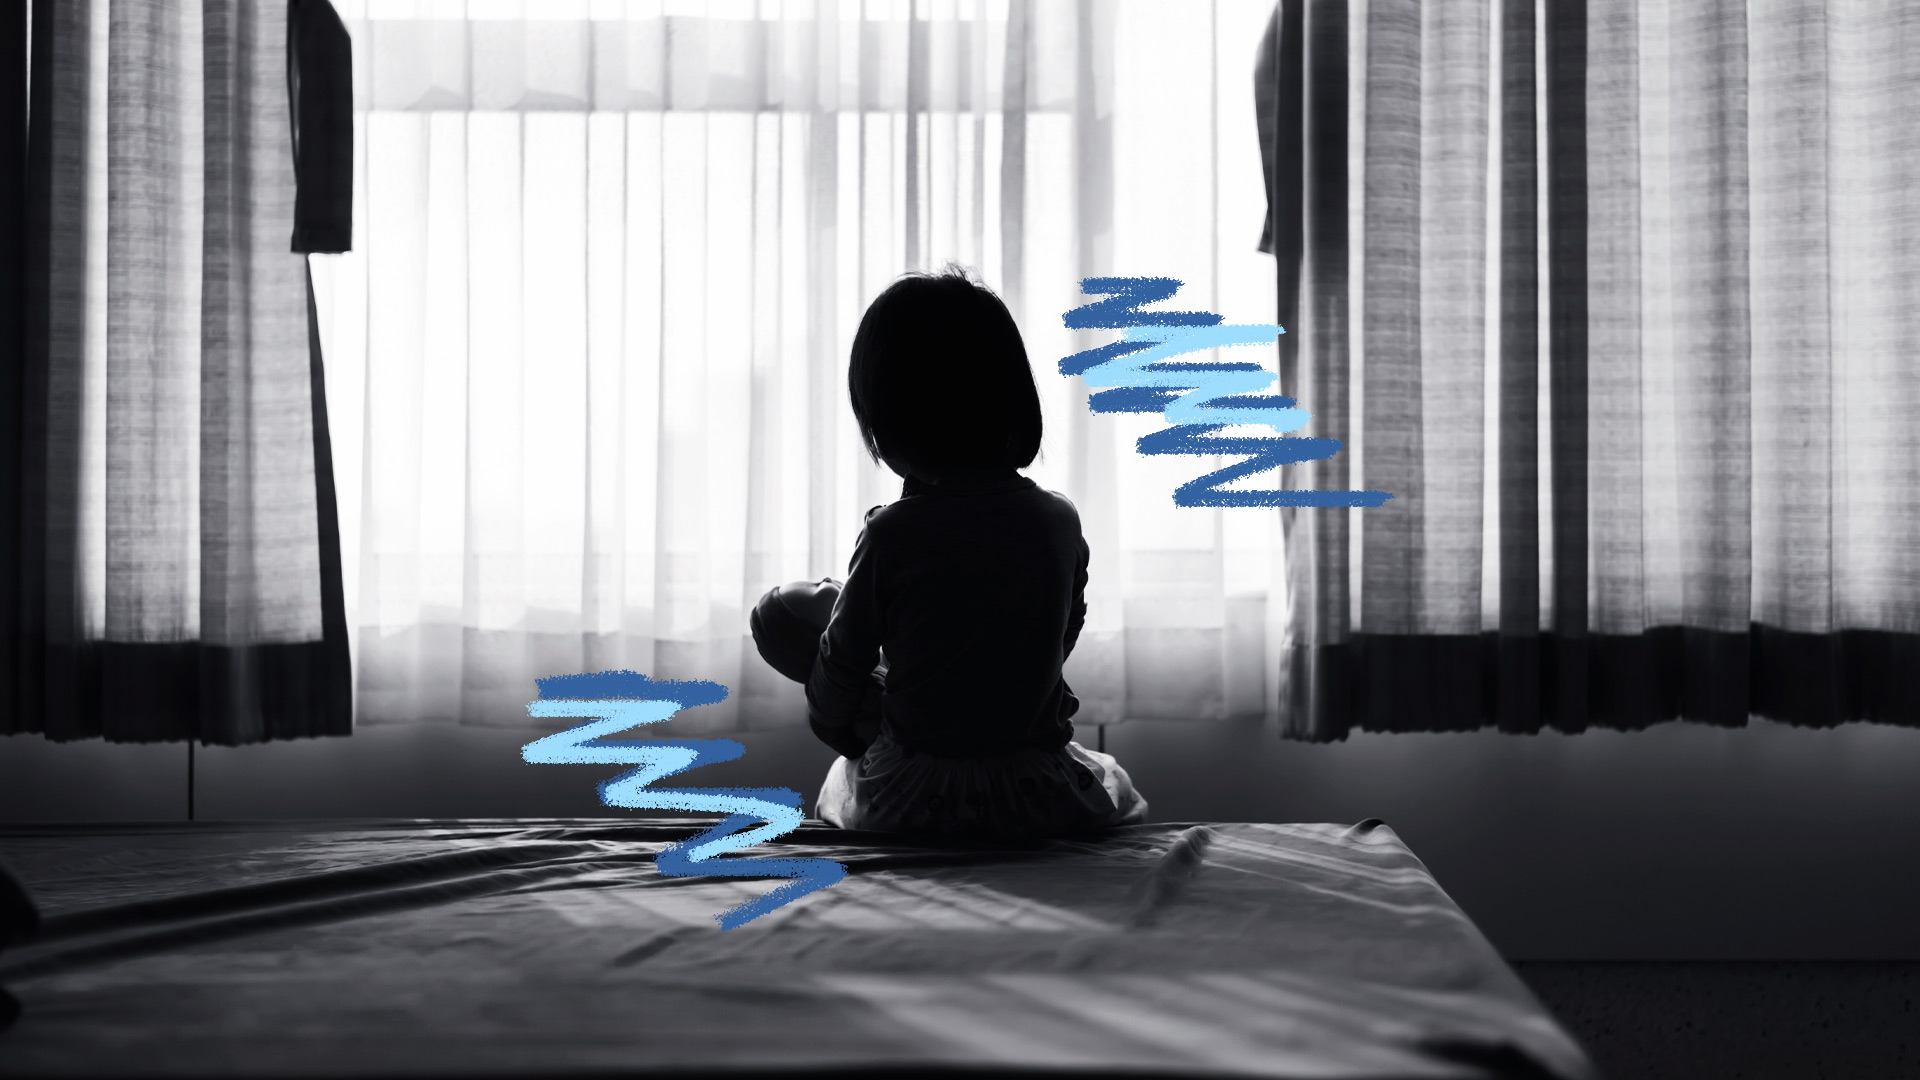 violência contra crianças: uma foto em preto e branco de uma menina sentada em cima de uma cama, de costas, olhando para uma janela